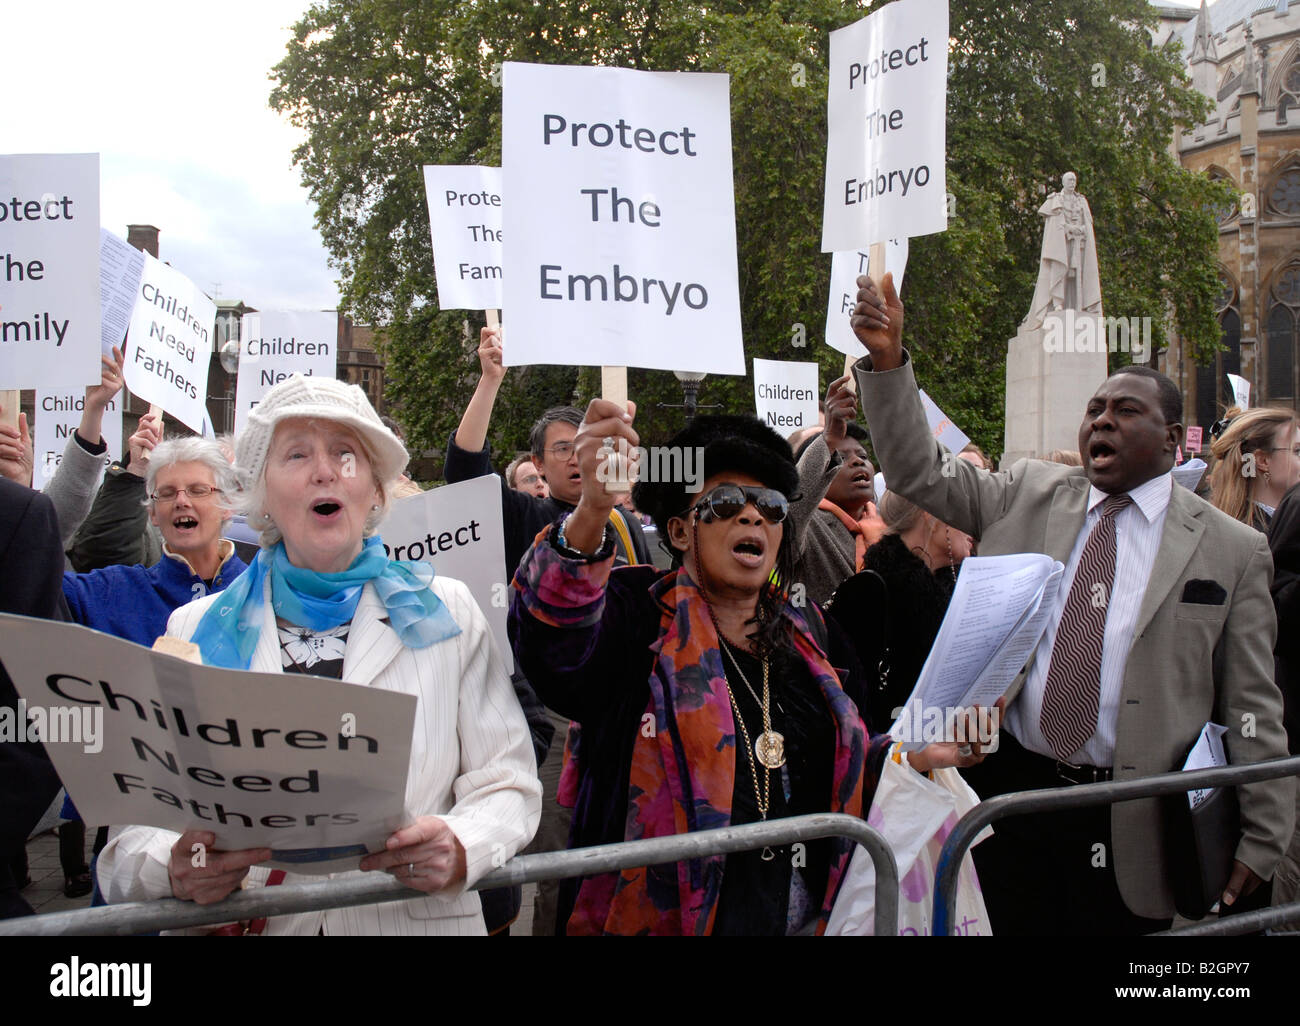 Groupe anti avortement à l'extérieur du Parlement Juin 2008 combats pour avoir le droit de limite d'âge inférieure. Banque D'Images